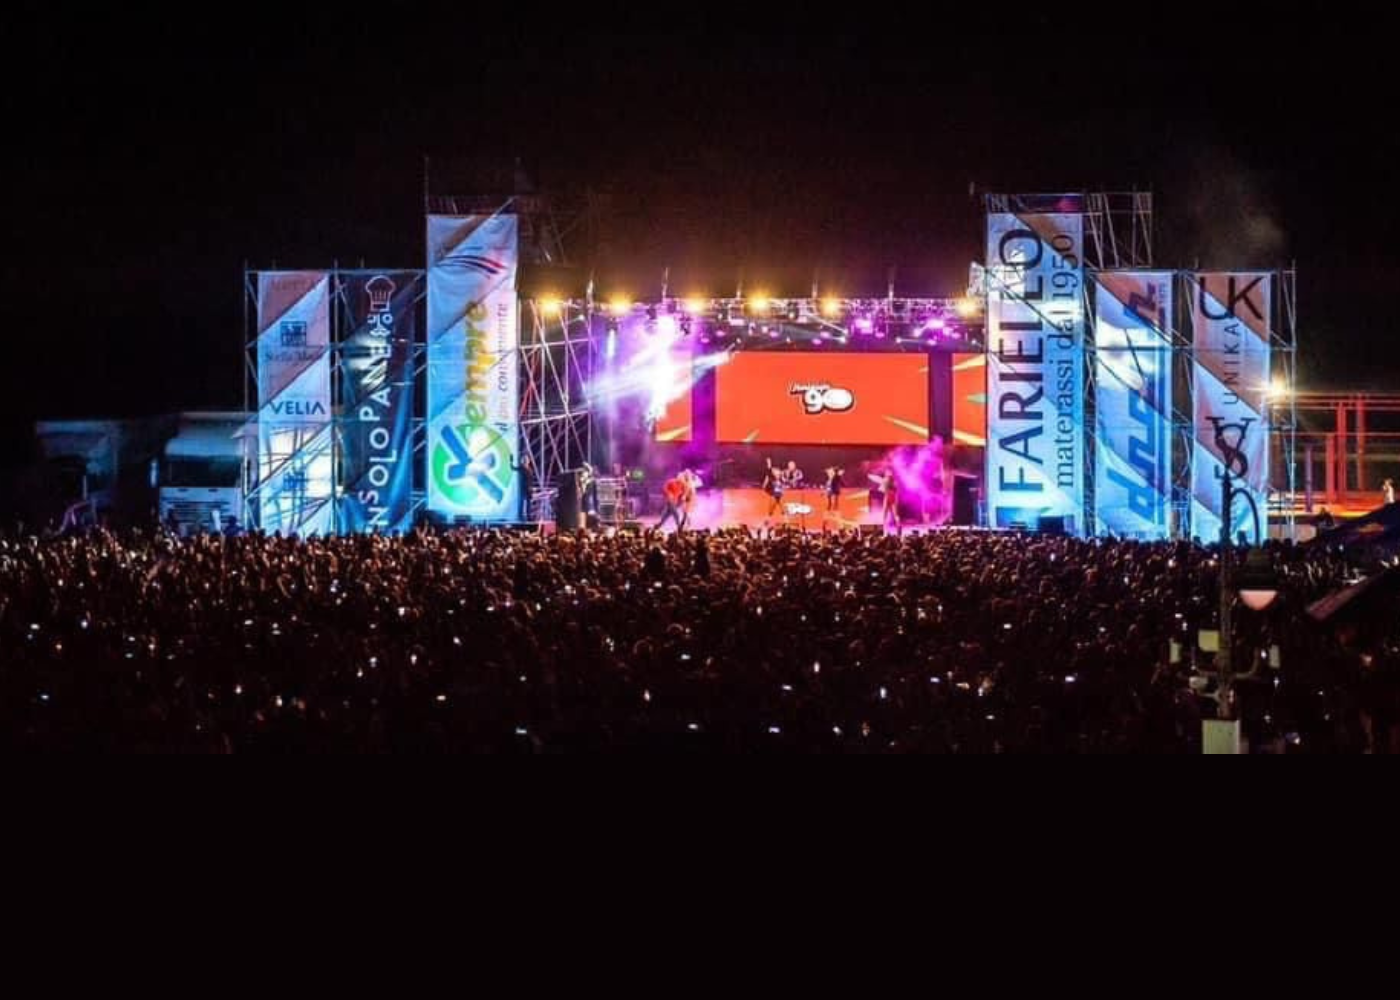 Ascea ospita il più grande Nostalgia 90 della storia: un palco da 50 metri, fuochi d’artificio e giochi di luce